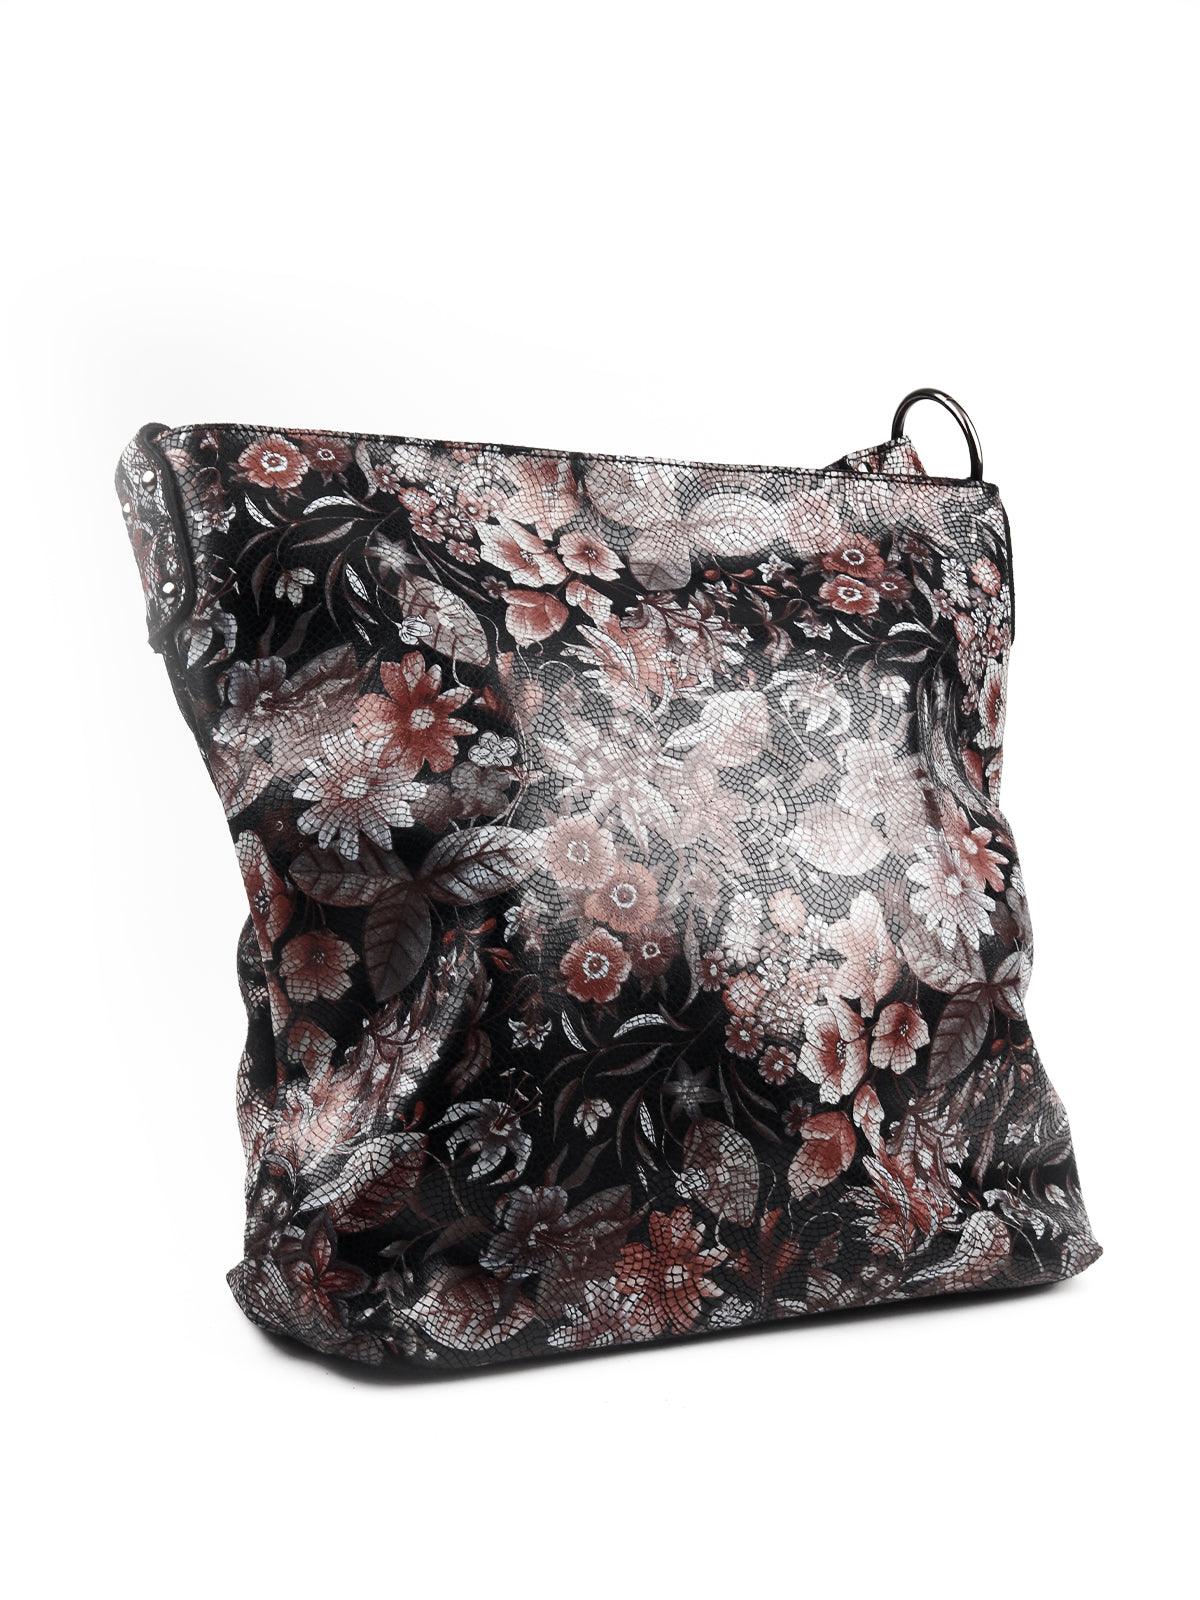 Black floral printed handbag - Odette